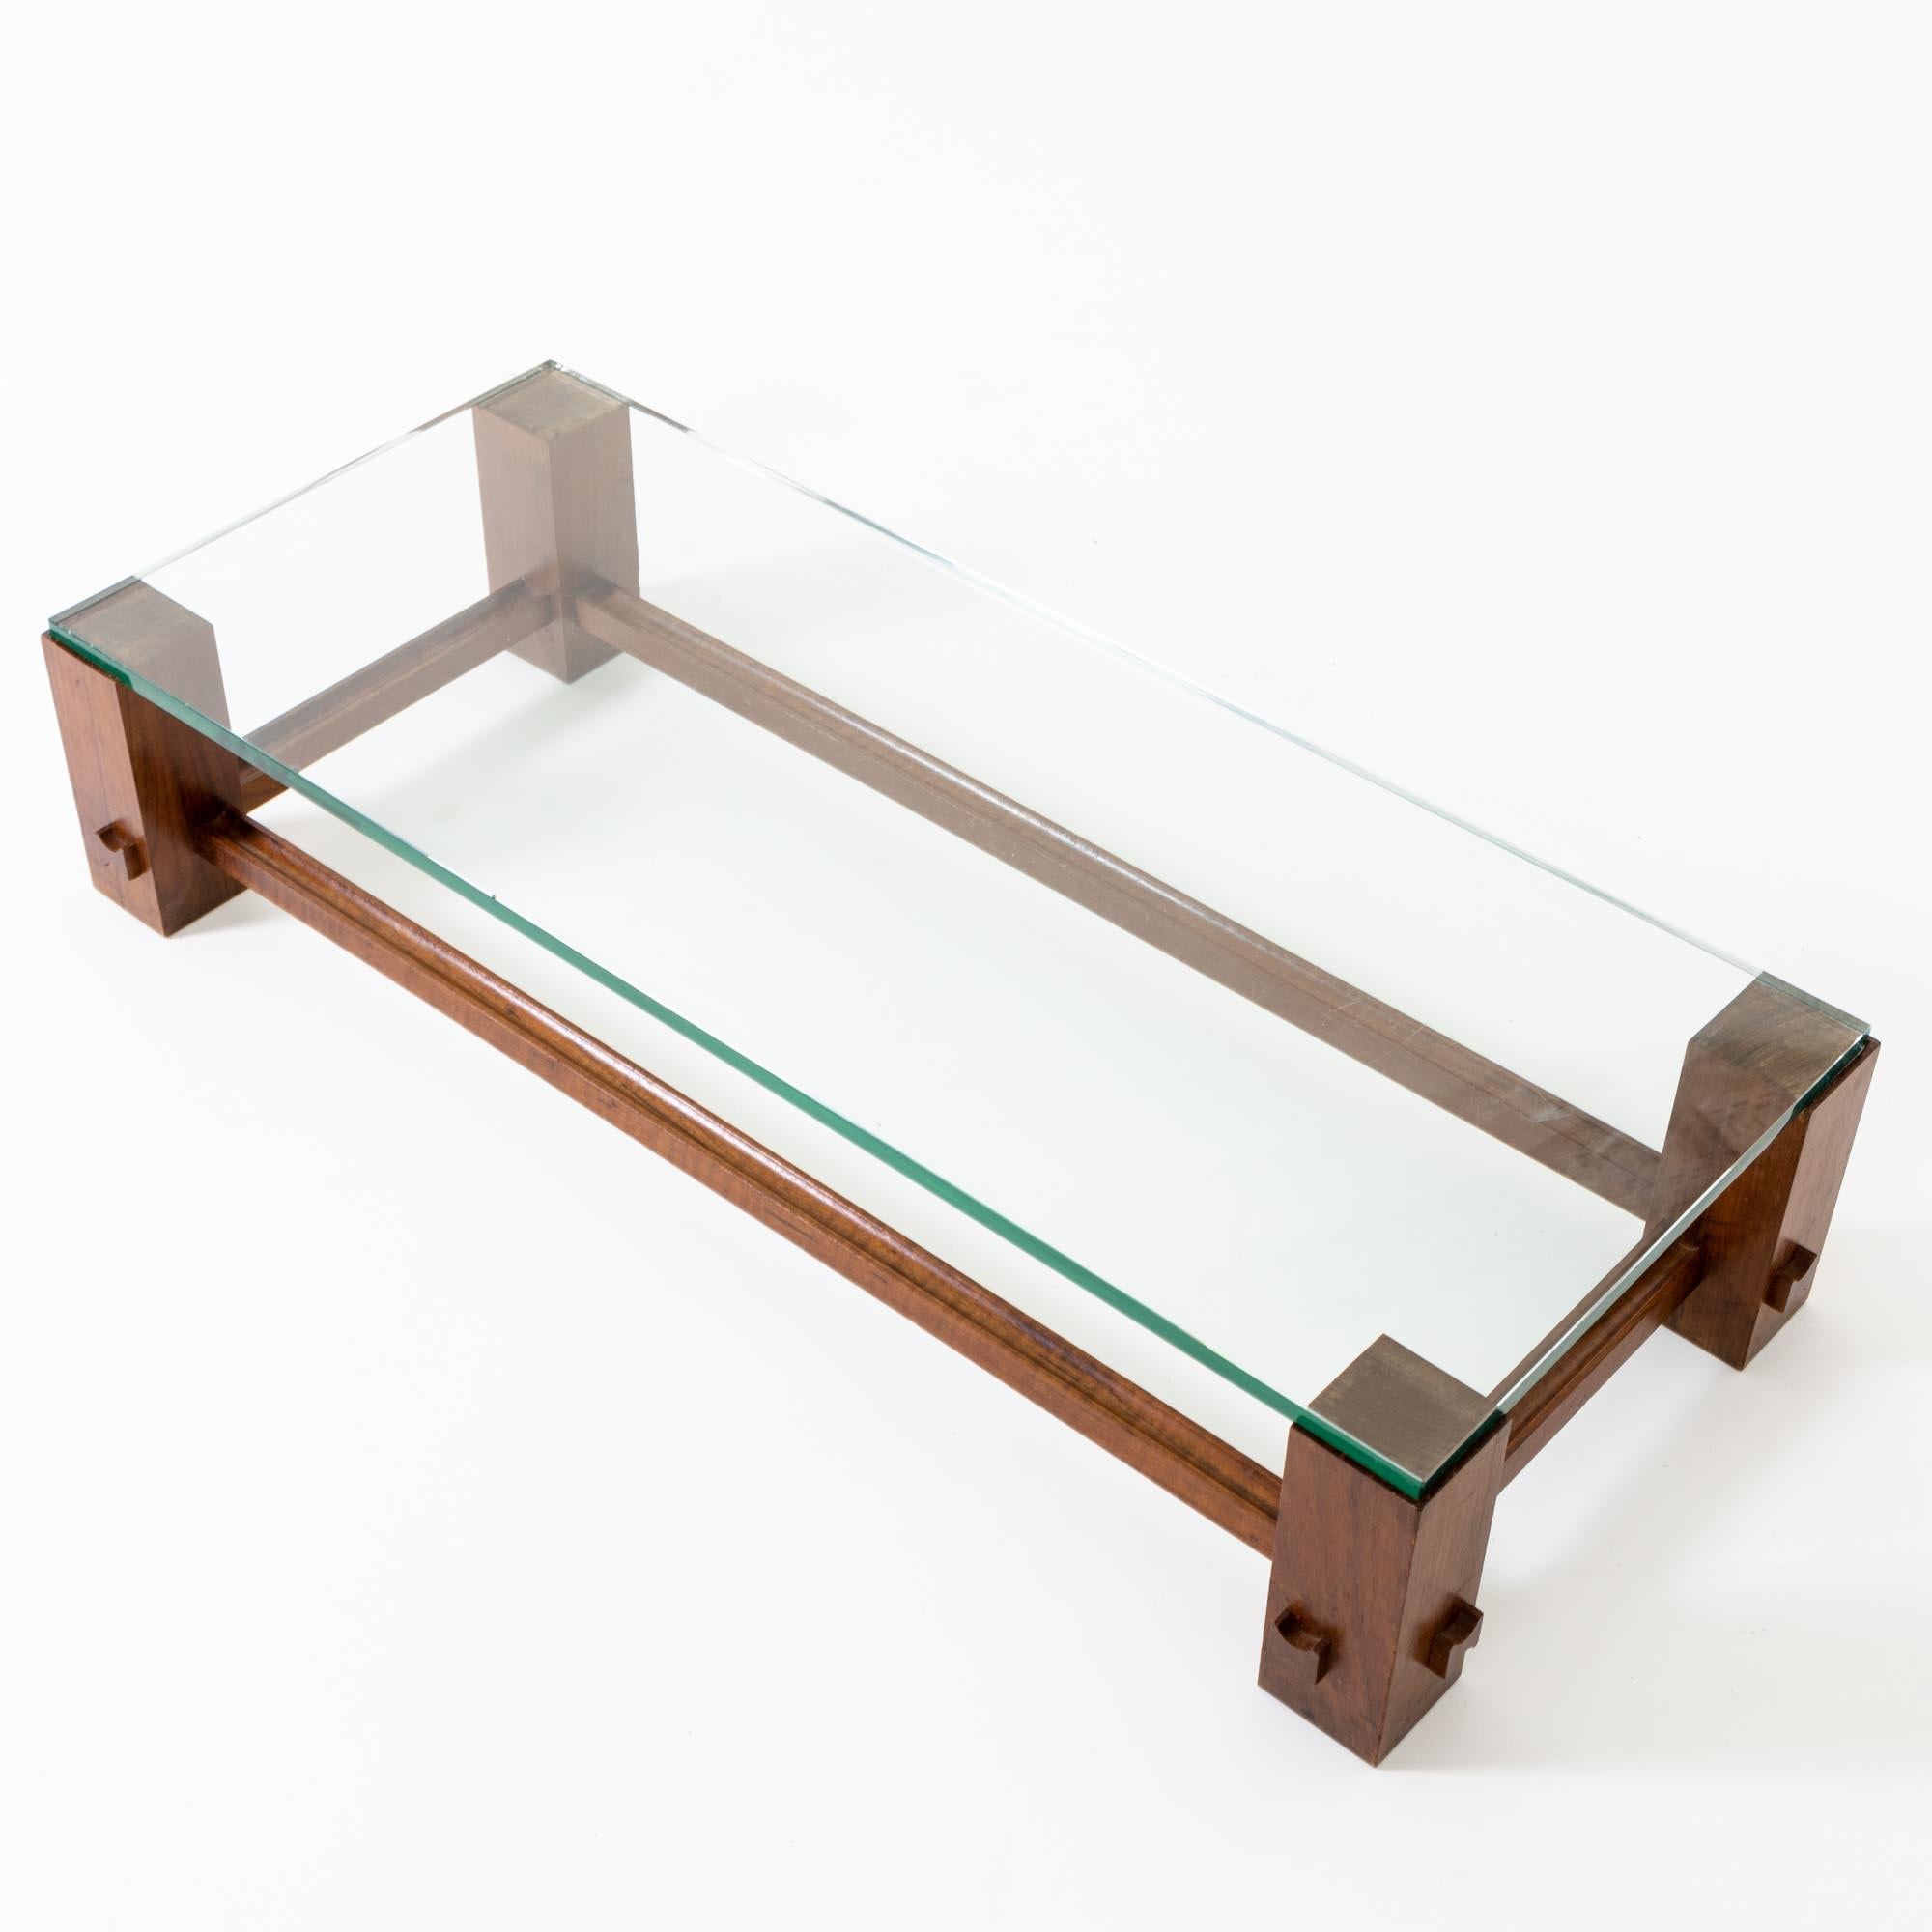 Table basse rectangulaire sur un soubassement en hêtre teinté brun foncé recouvert d'une épaisse vitre. Les étais sont constitués de lattes de bois profilées en forme de U.